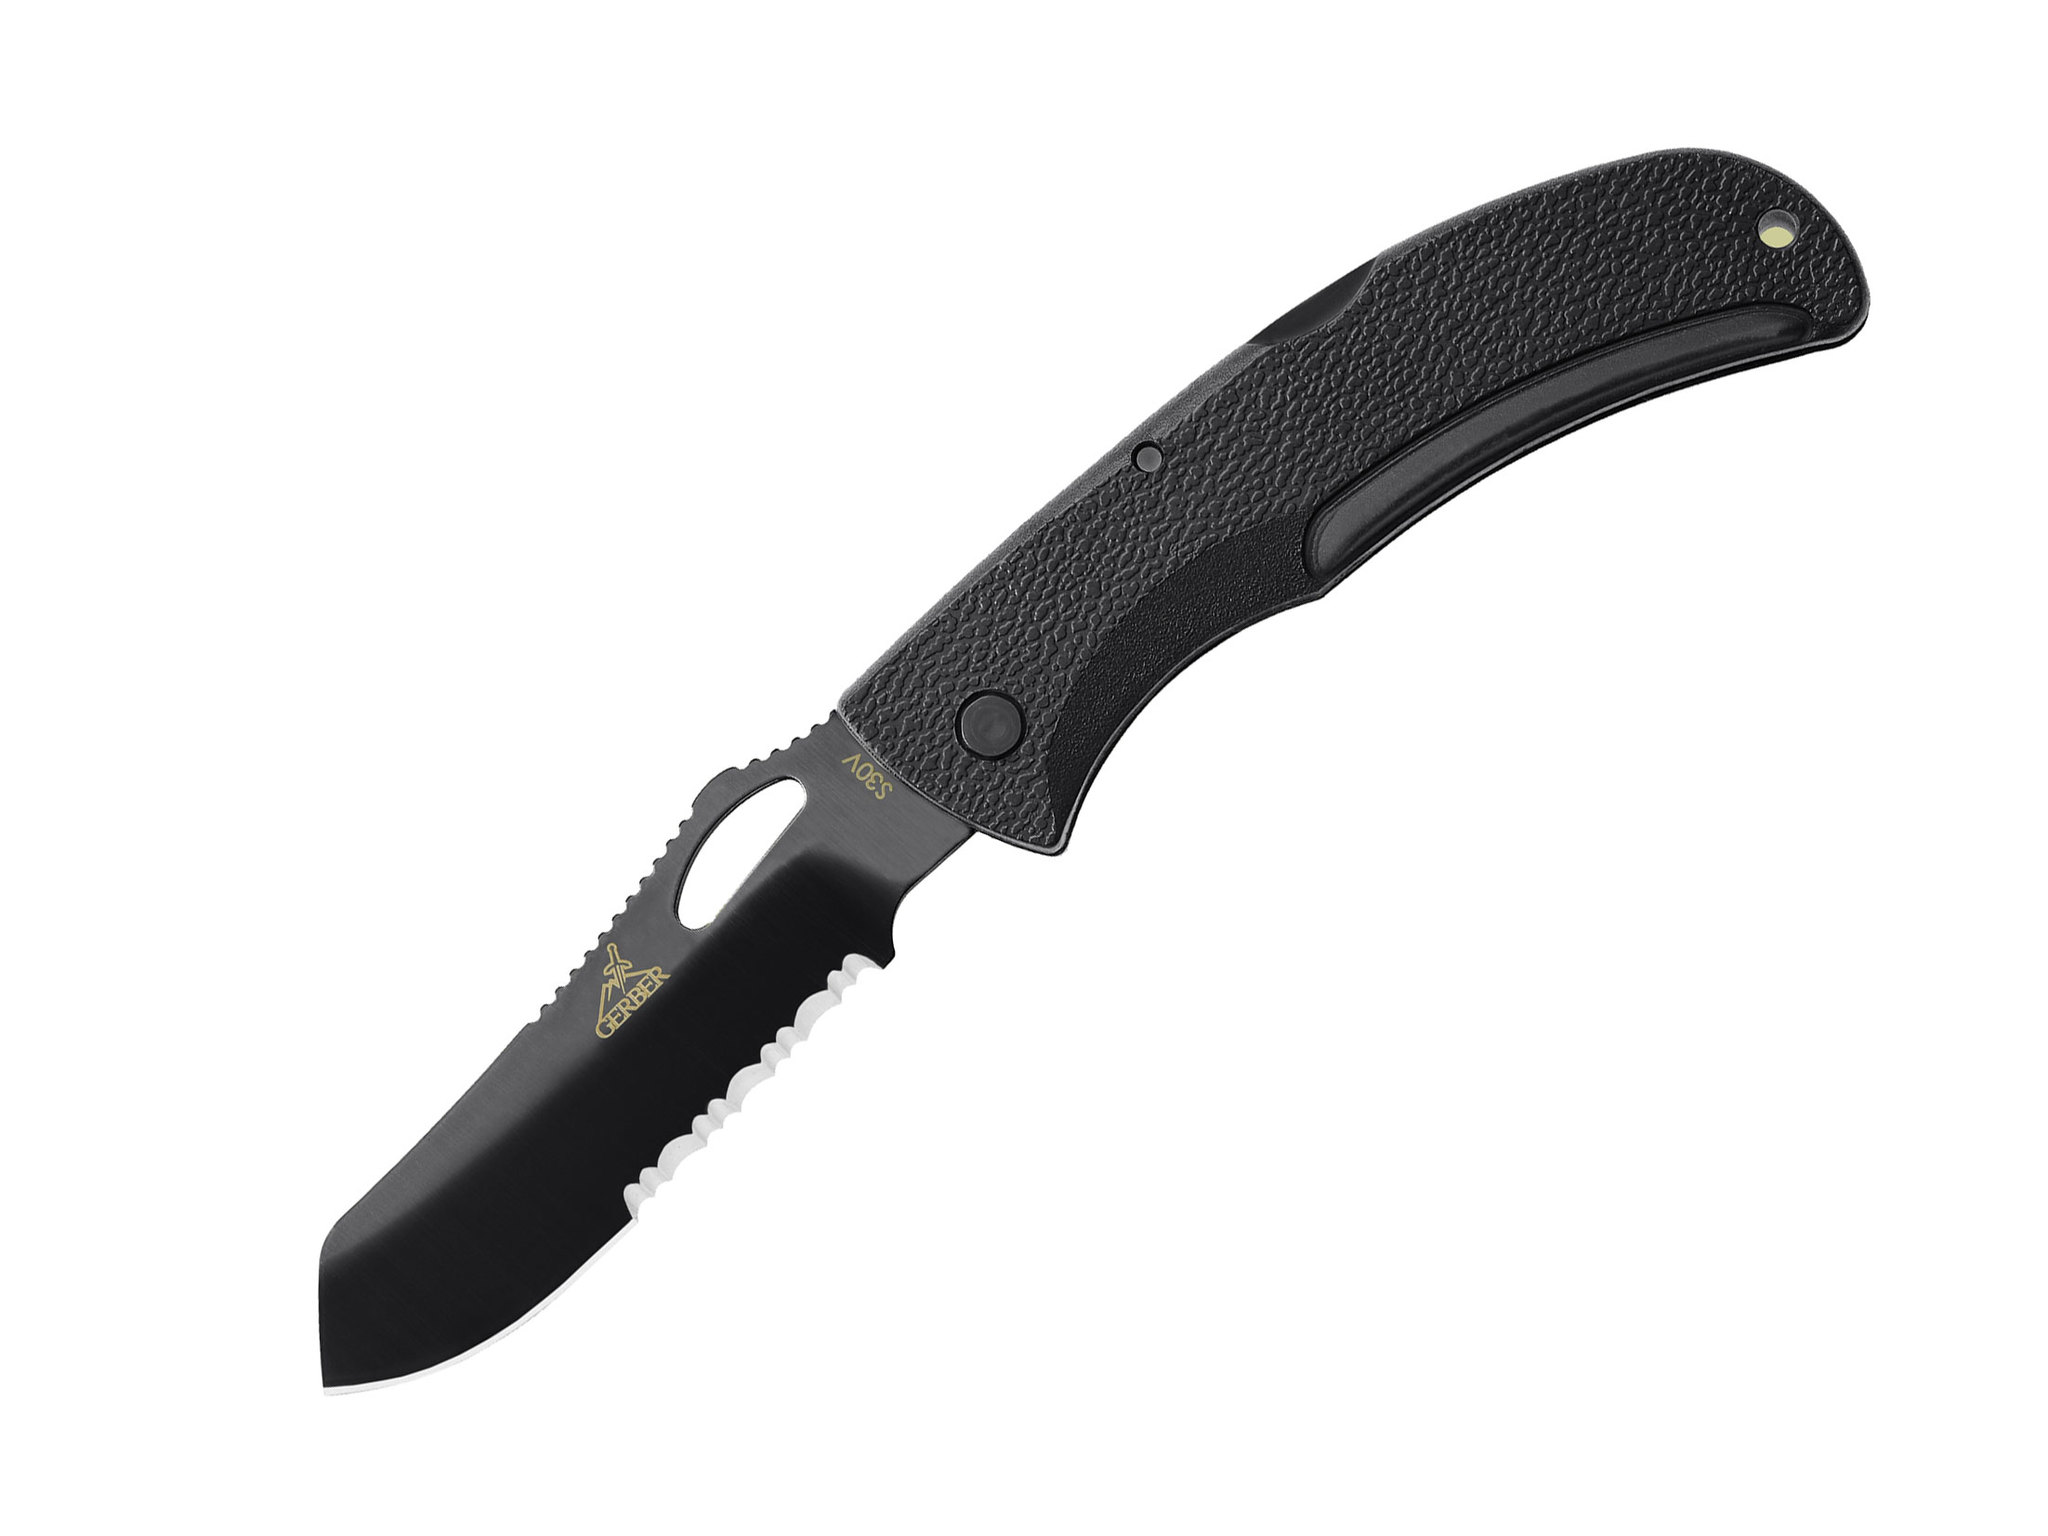 Складной нож Gerber E-Z Out Black, сталь CPM-S30V, рукоять термопластик GRN нож с фиксированным клинком gerber metolius caper сталь 420hc рукоять g10